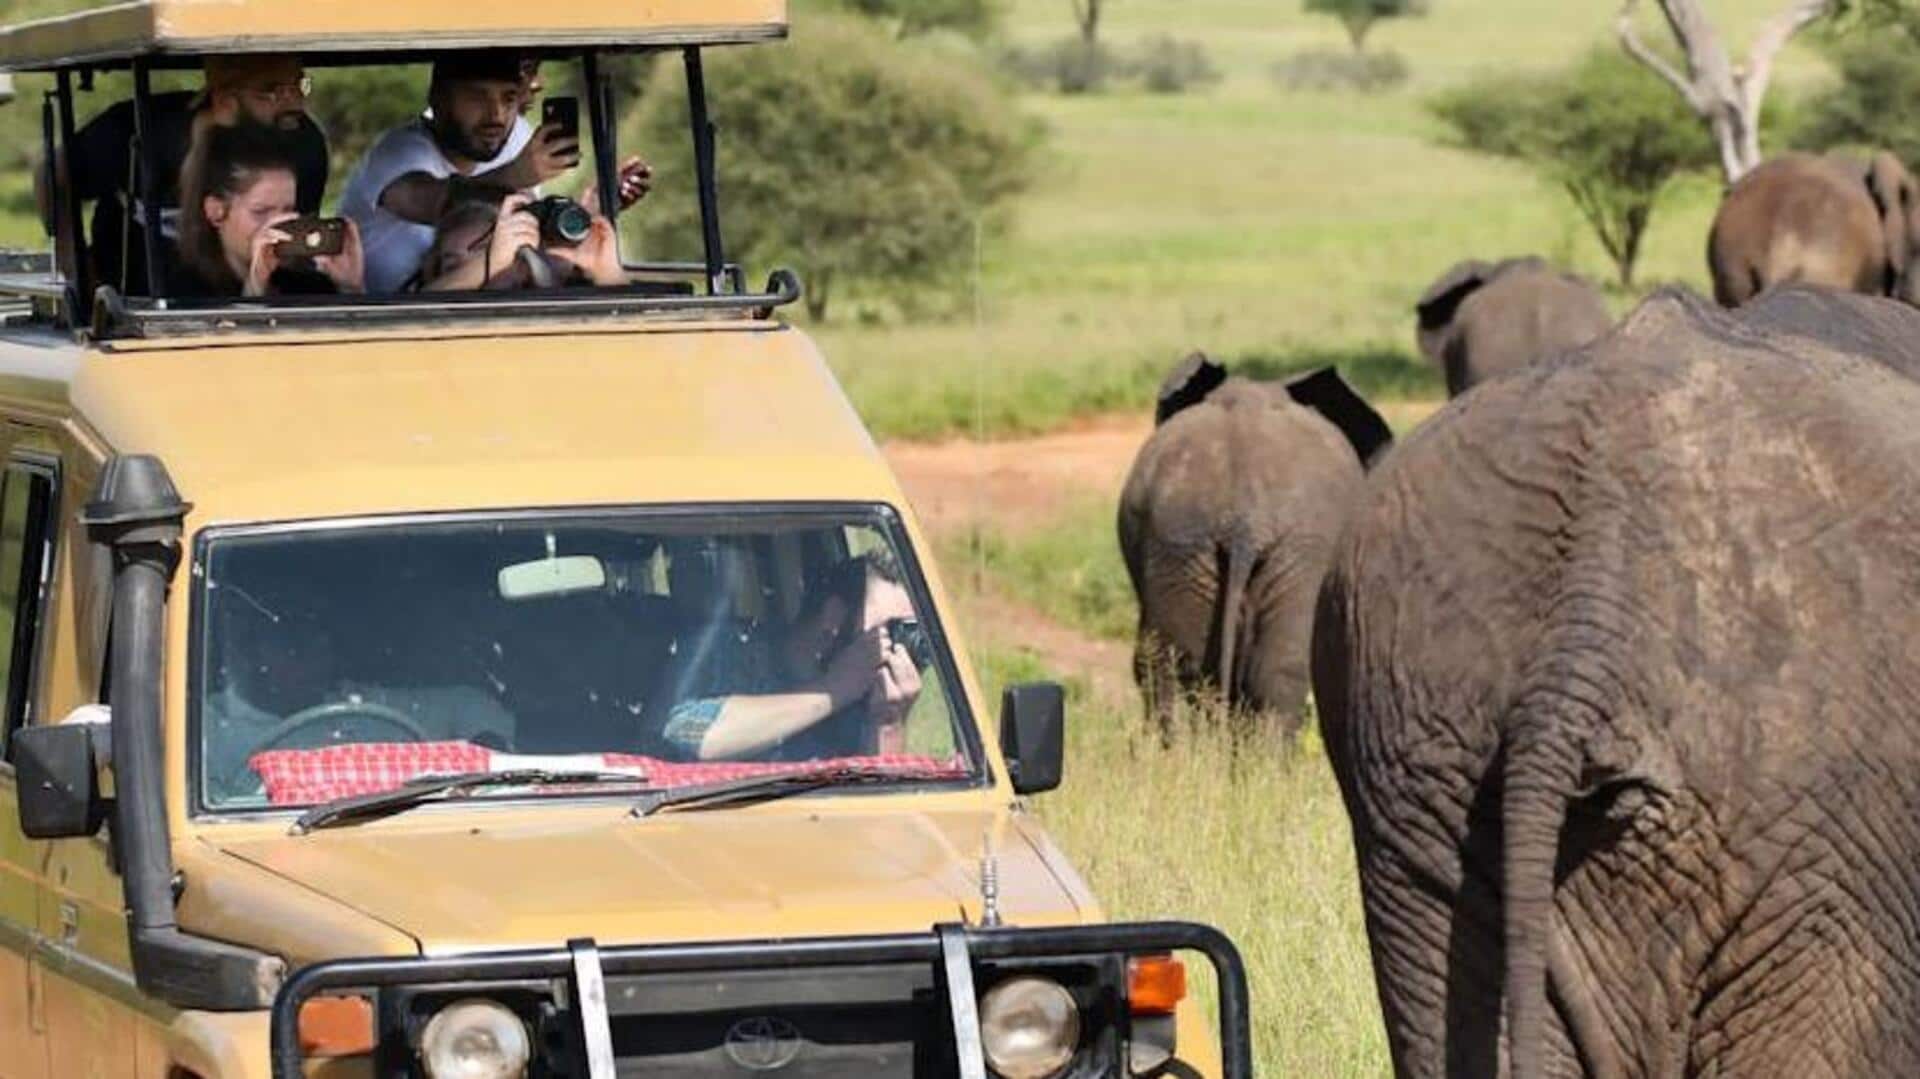 Serengeti safari: A walk on the wild side of Tanzania